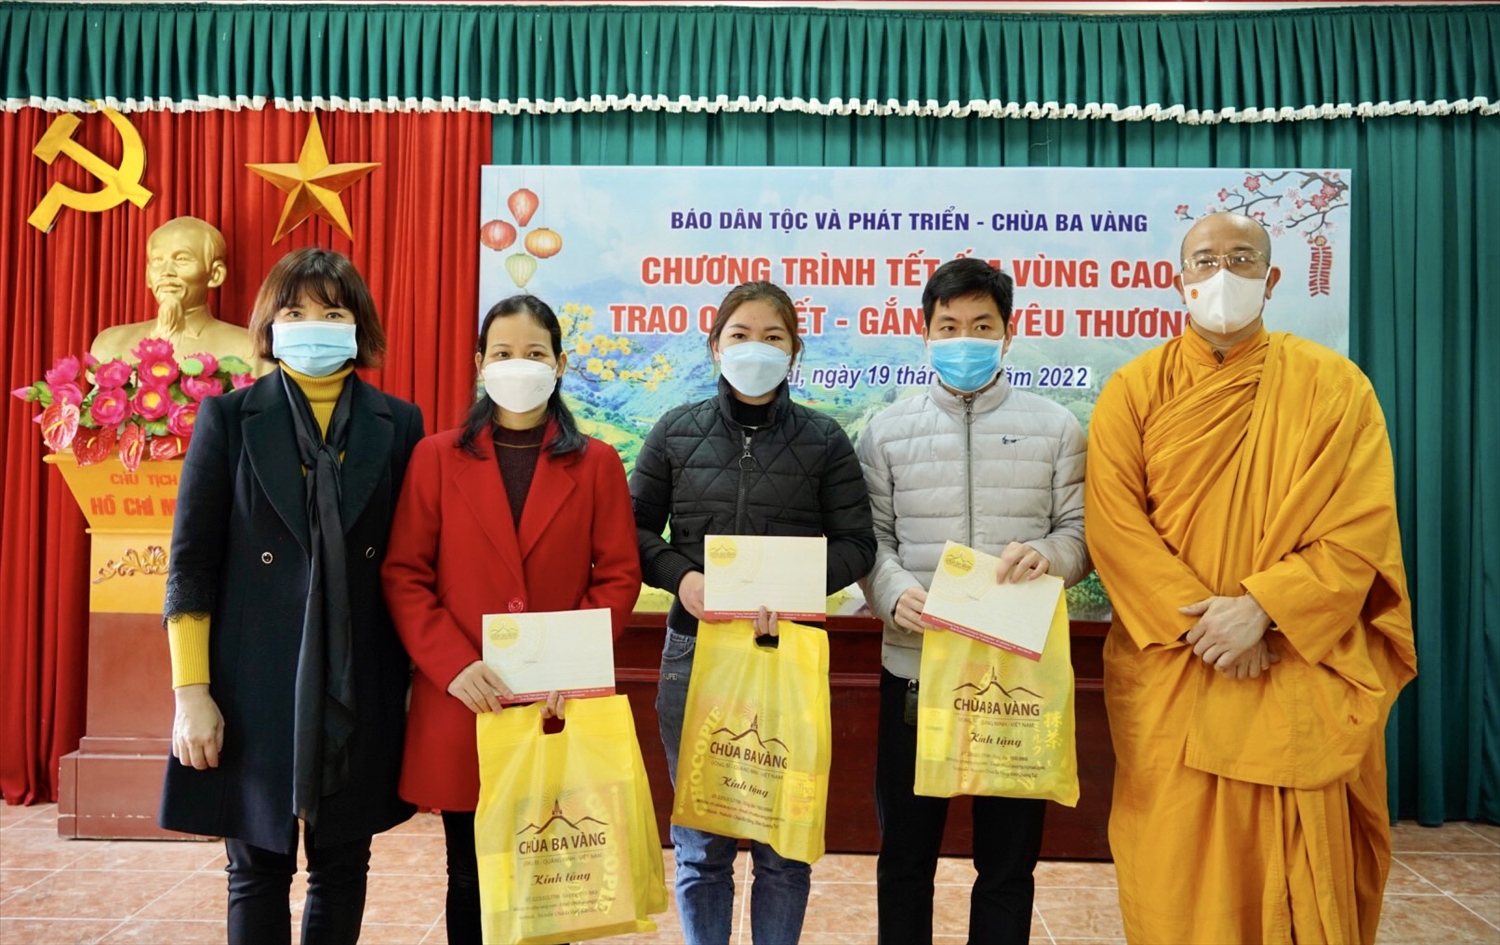  (Tin) Báo Dân tộc và Phát triển phối hợp với Chùa Ba Vàng tổ chức Chương trình "Trao quà Tết gắn kết yêu thương" tại tỉnh Thái Nguyên 5